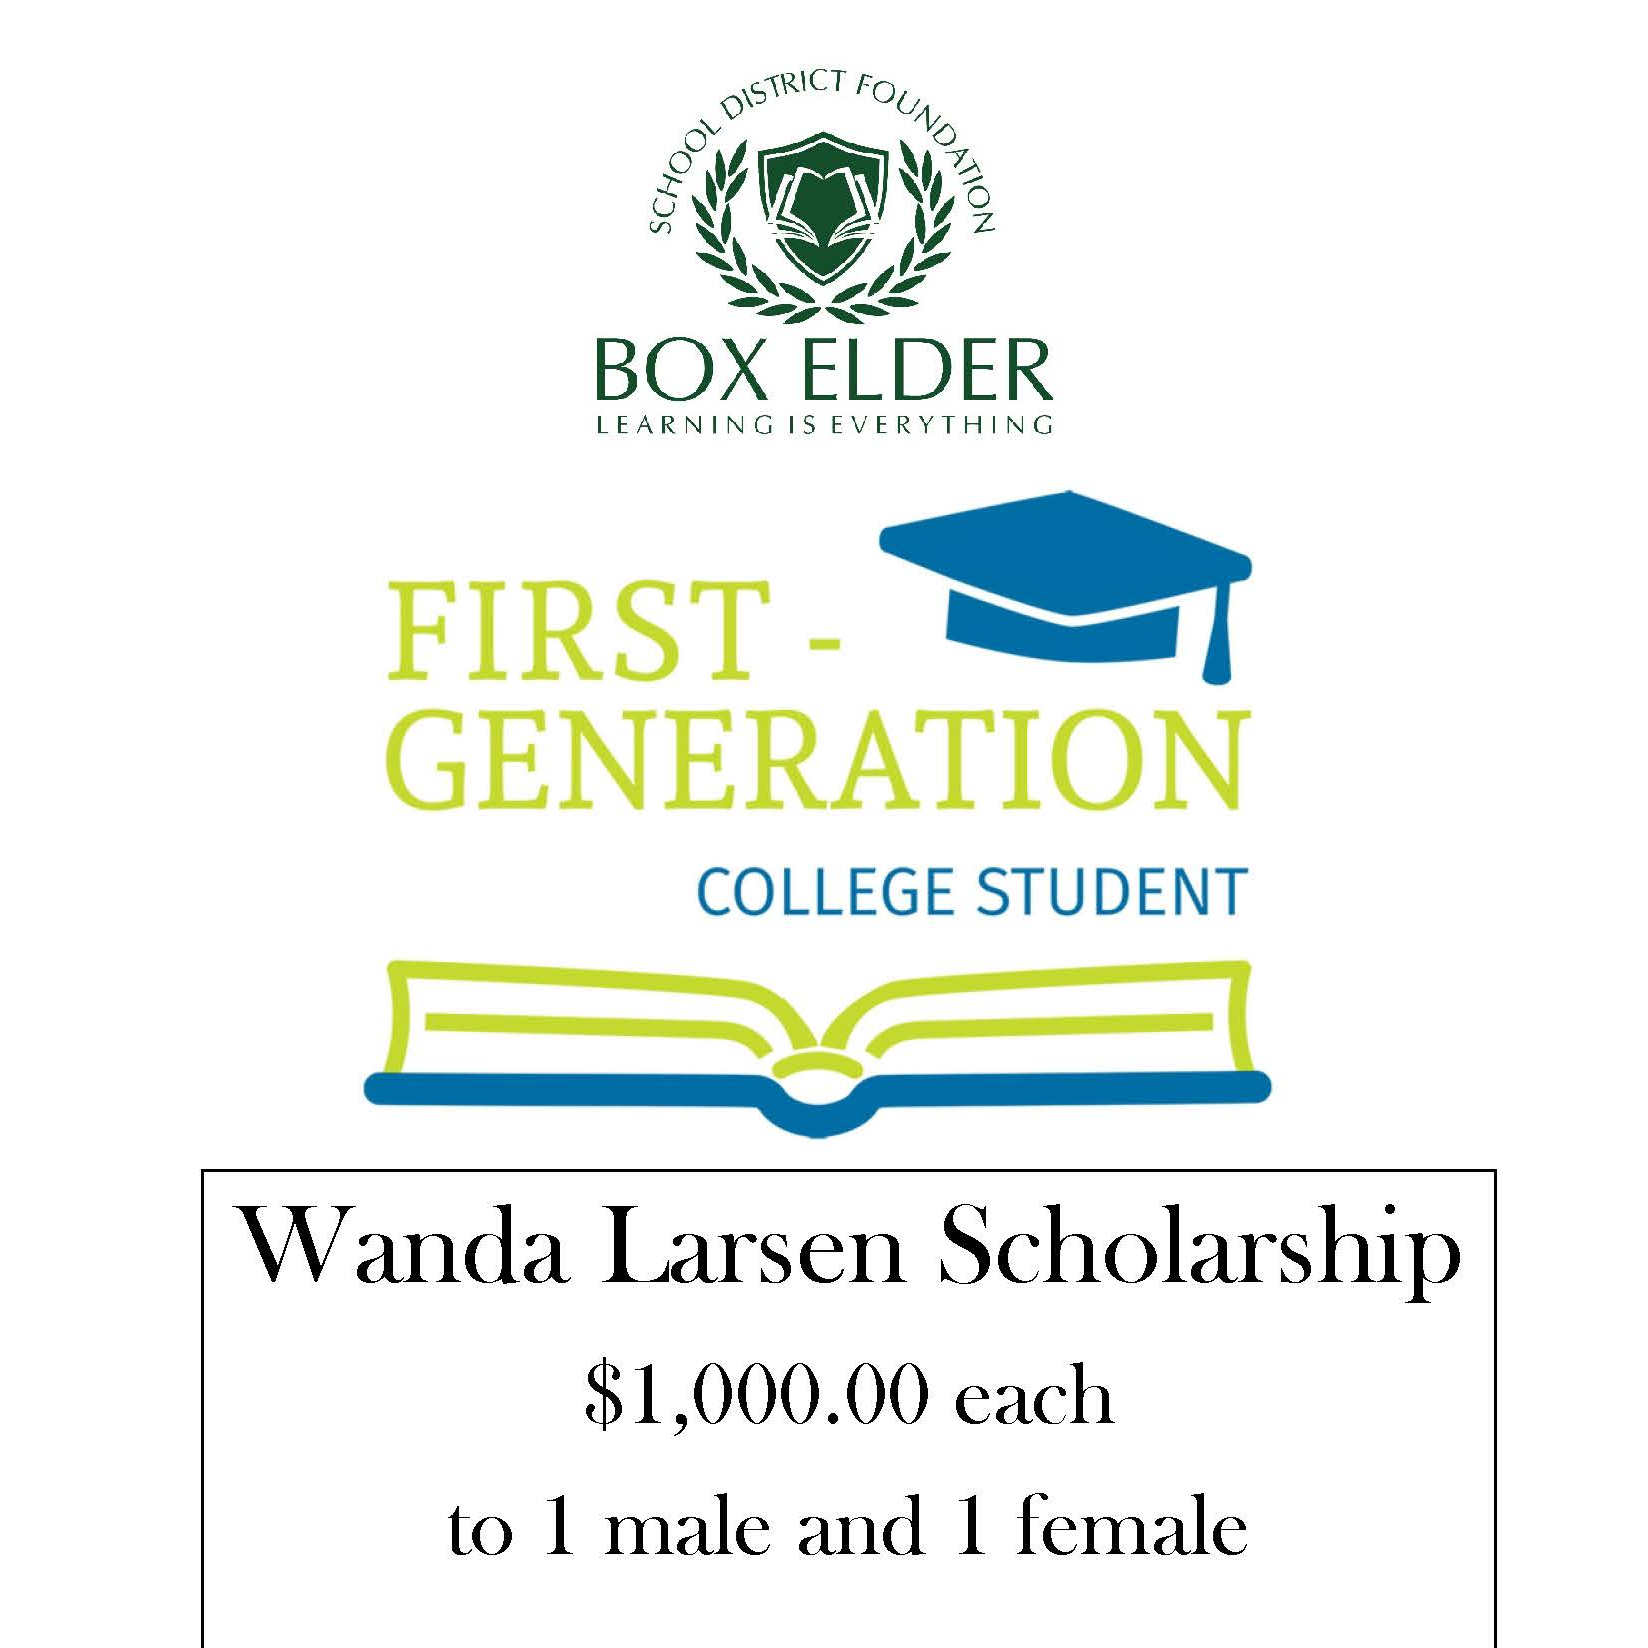 Wanda Larsen Scholarship